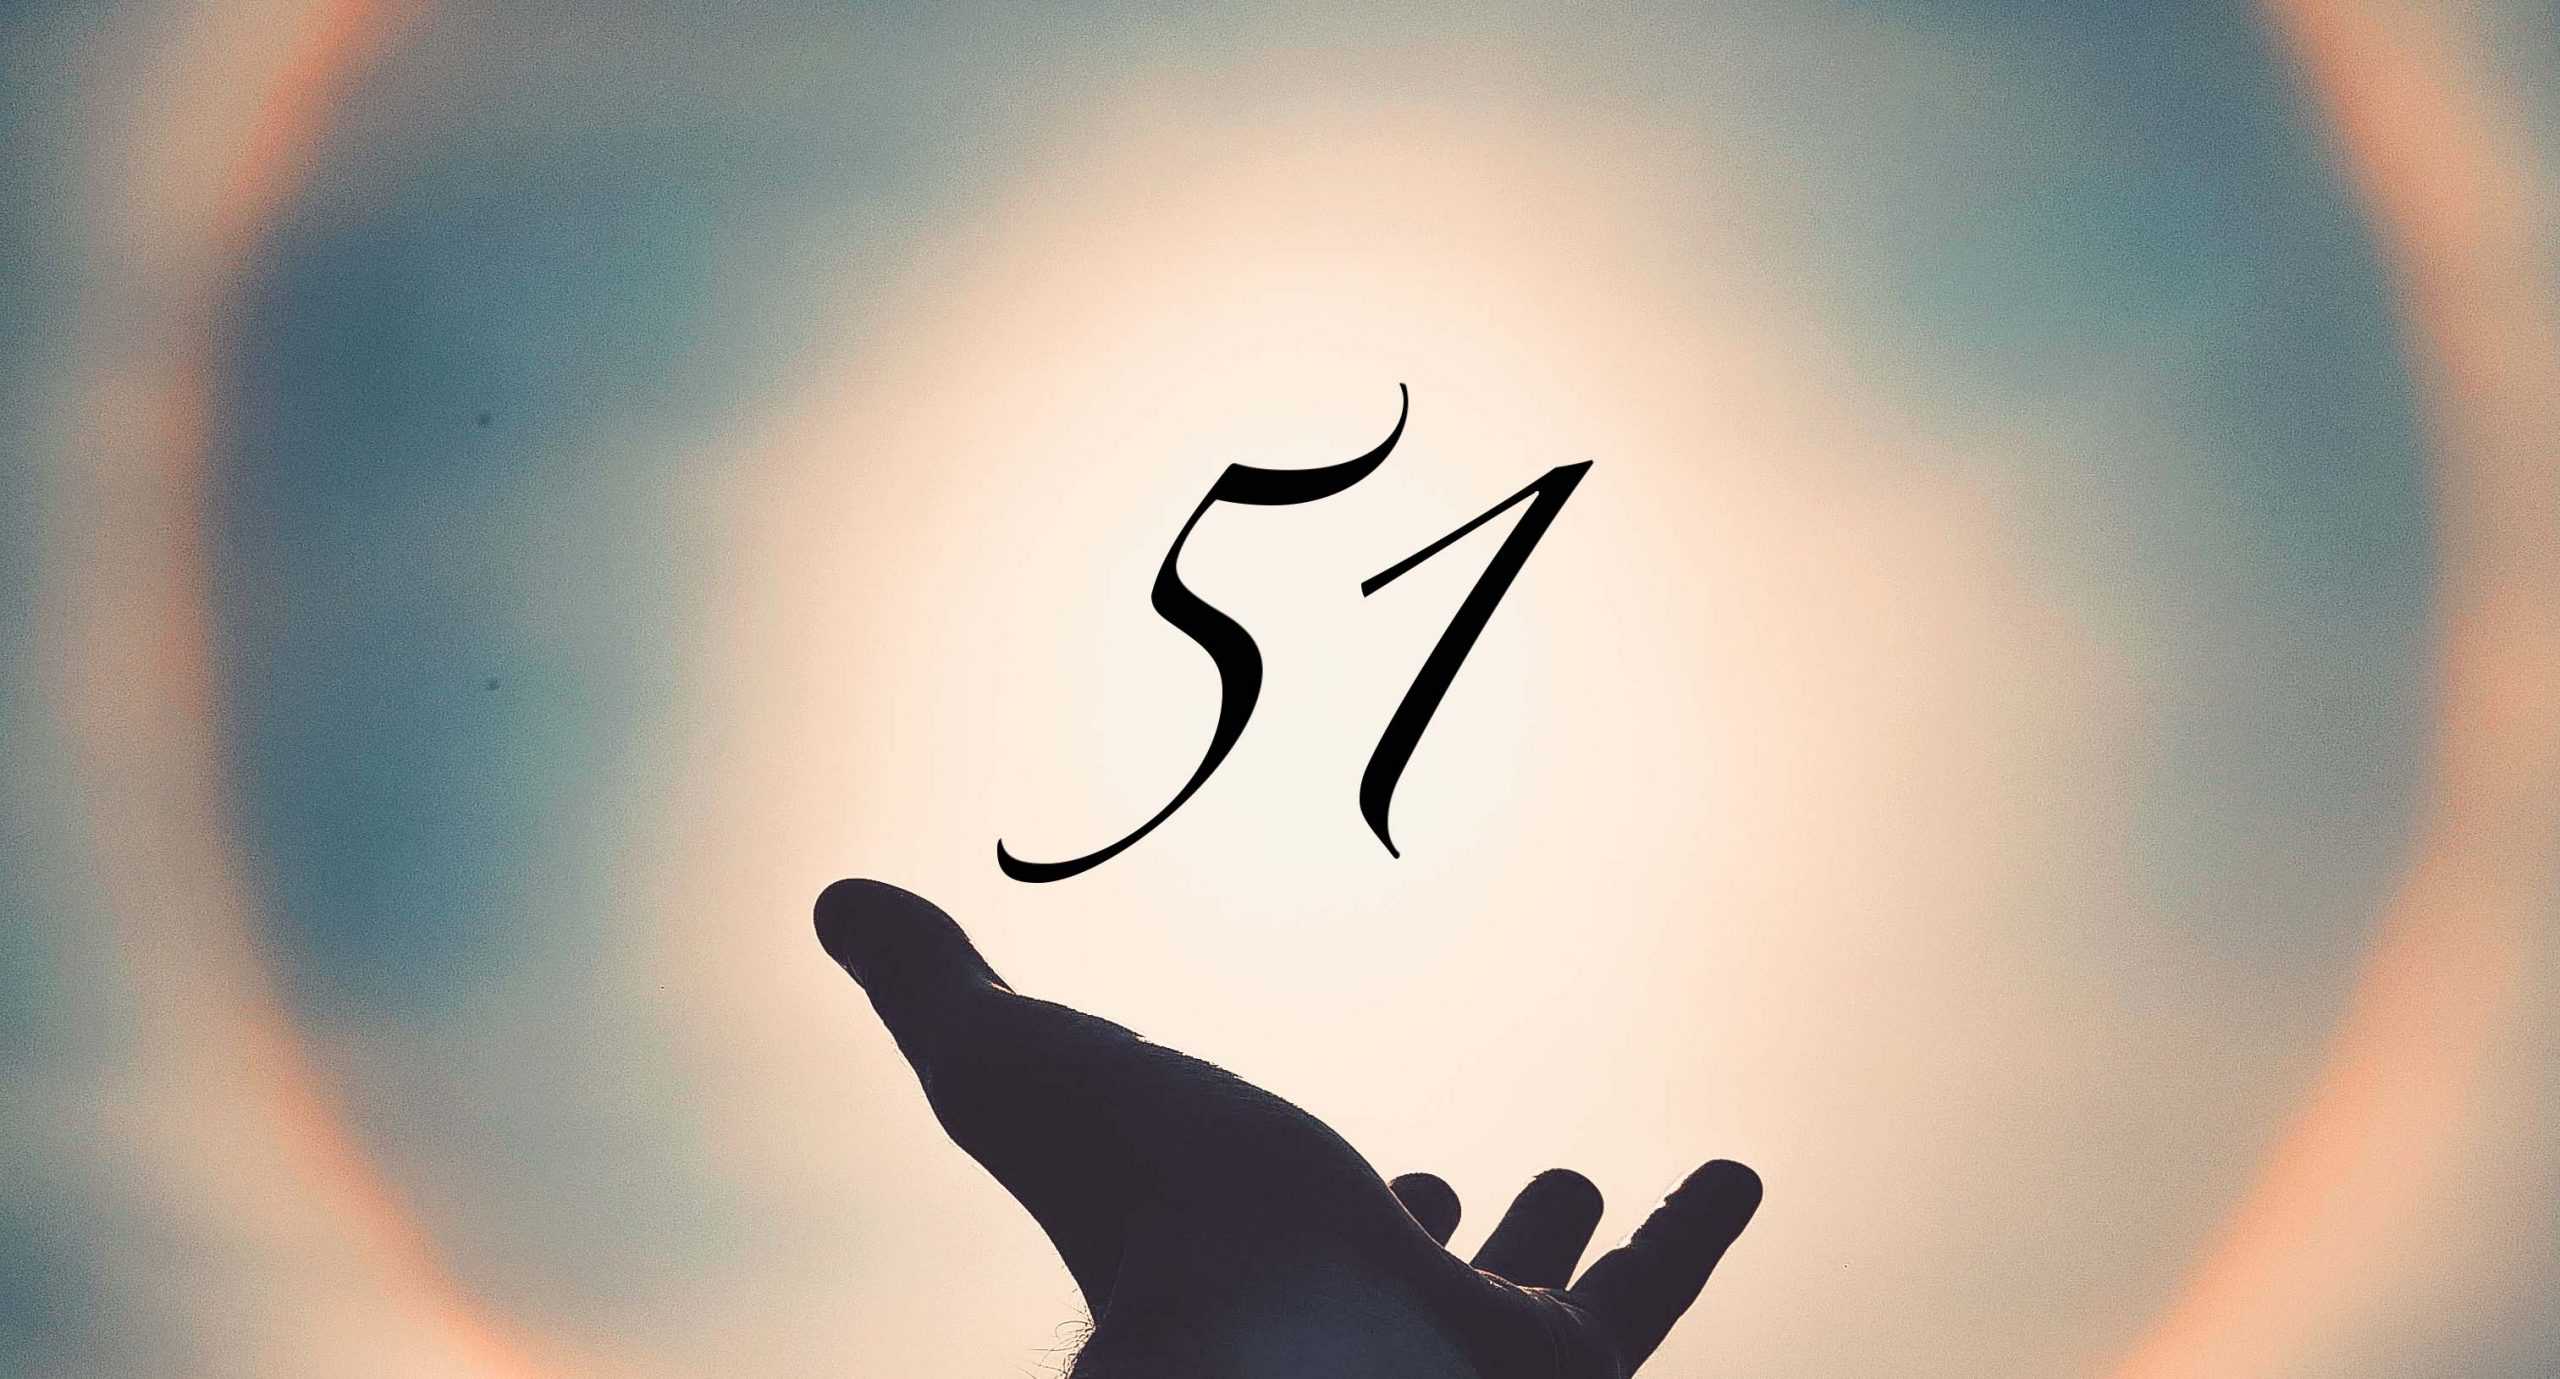 Signification du nombre 51